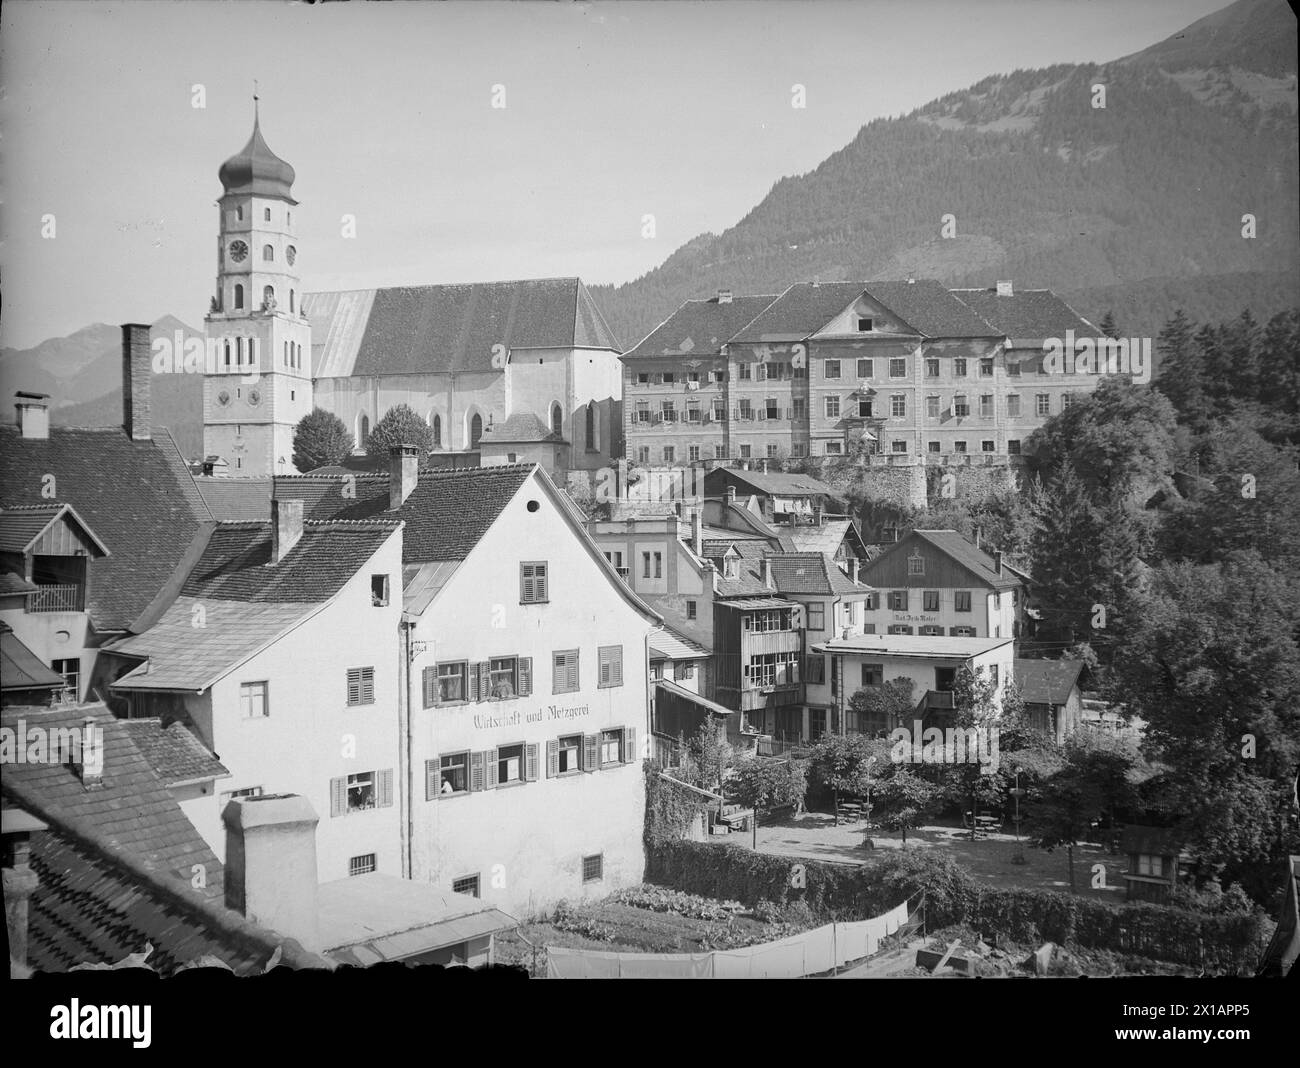 Bludenz, Teilaufsicht mit Kirche St. Laurentius und Schloss Gayenhofen, 1930 - 19300101 PD8955 - Rechteinfo: Rights Managed (RM) Stockfoto